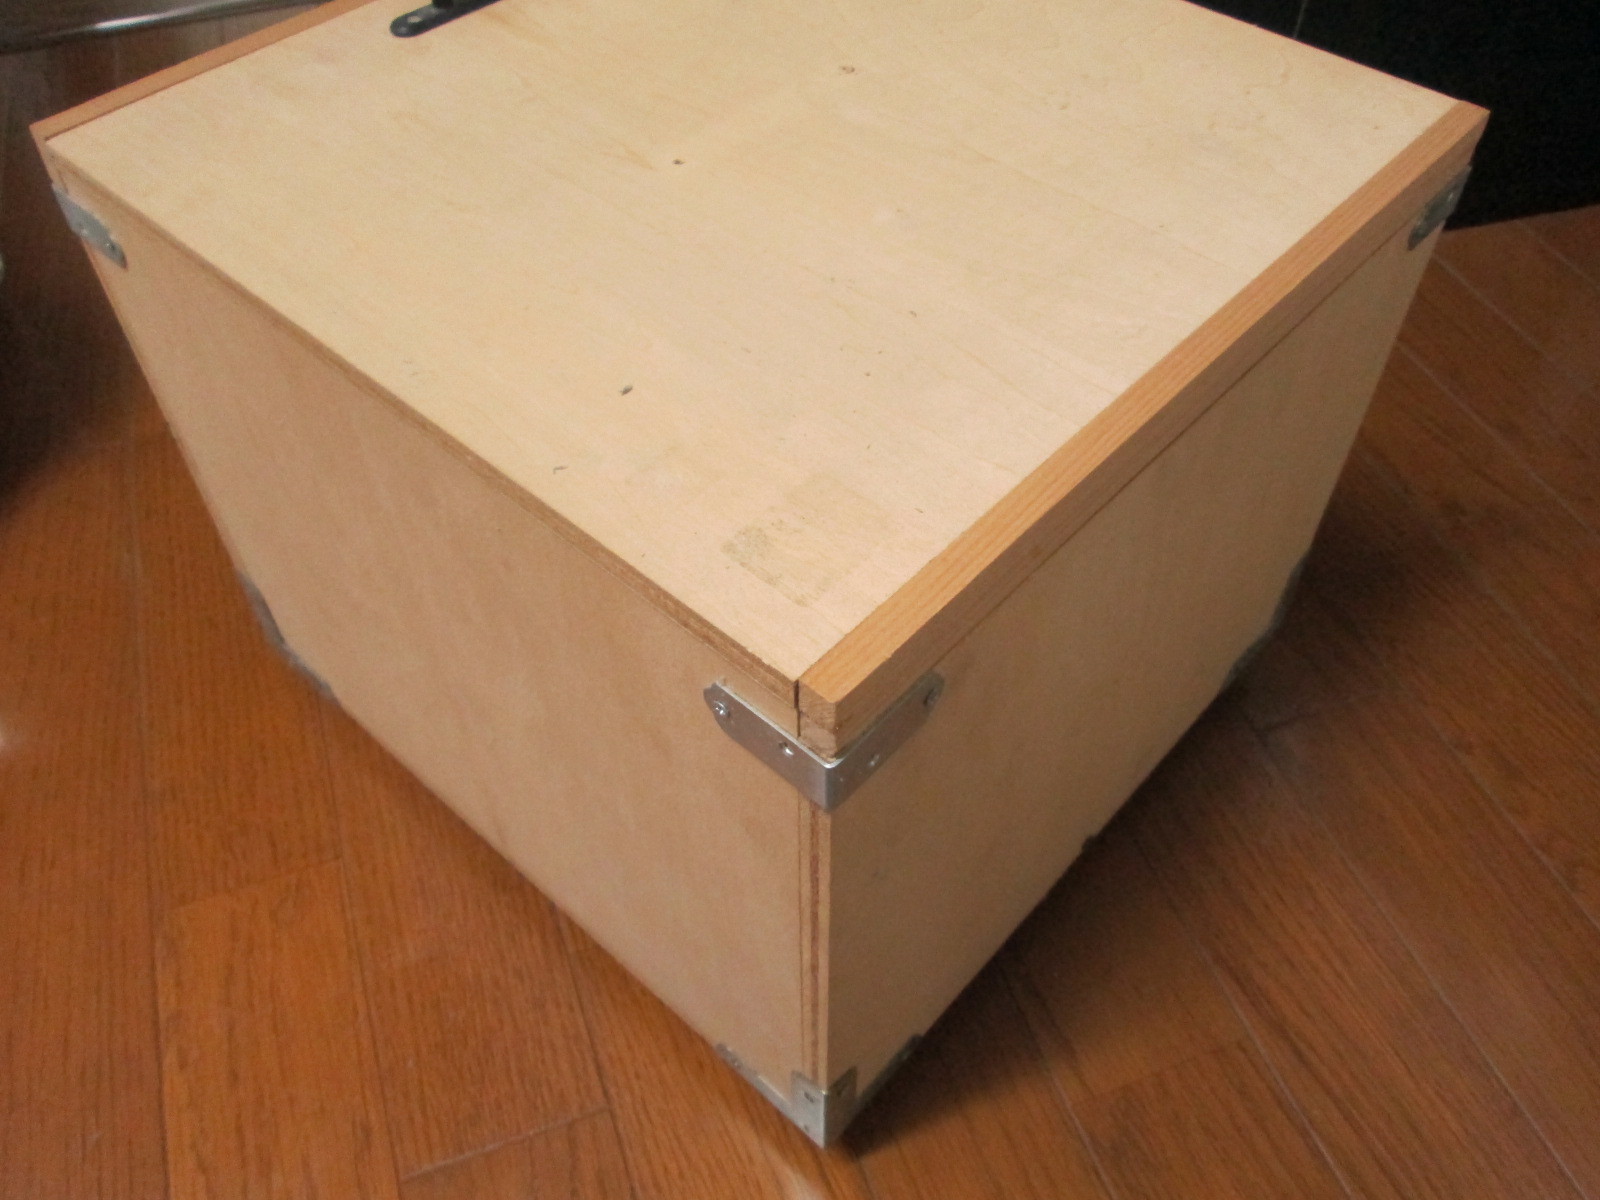 Diyで木箱作り 簡単手作りできる作り方や設計図を解説 蓋付きも簡単 暮らし の